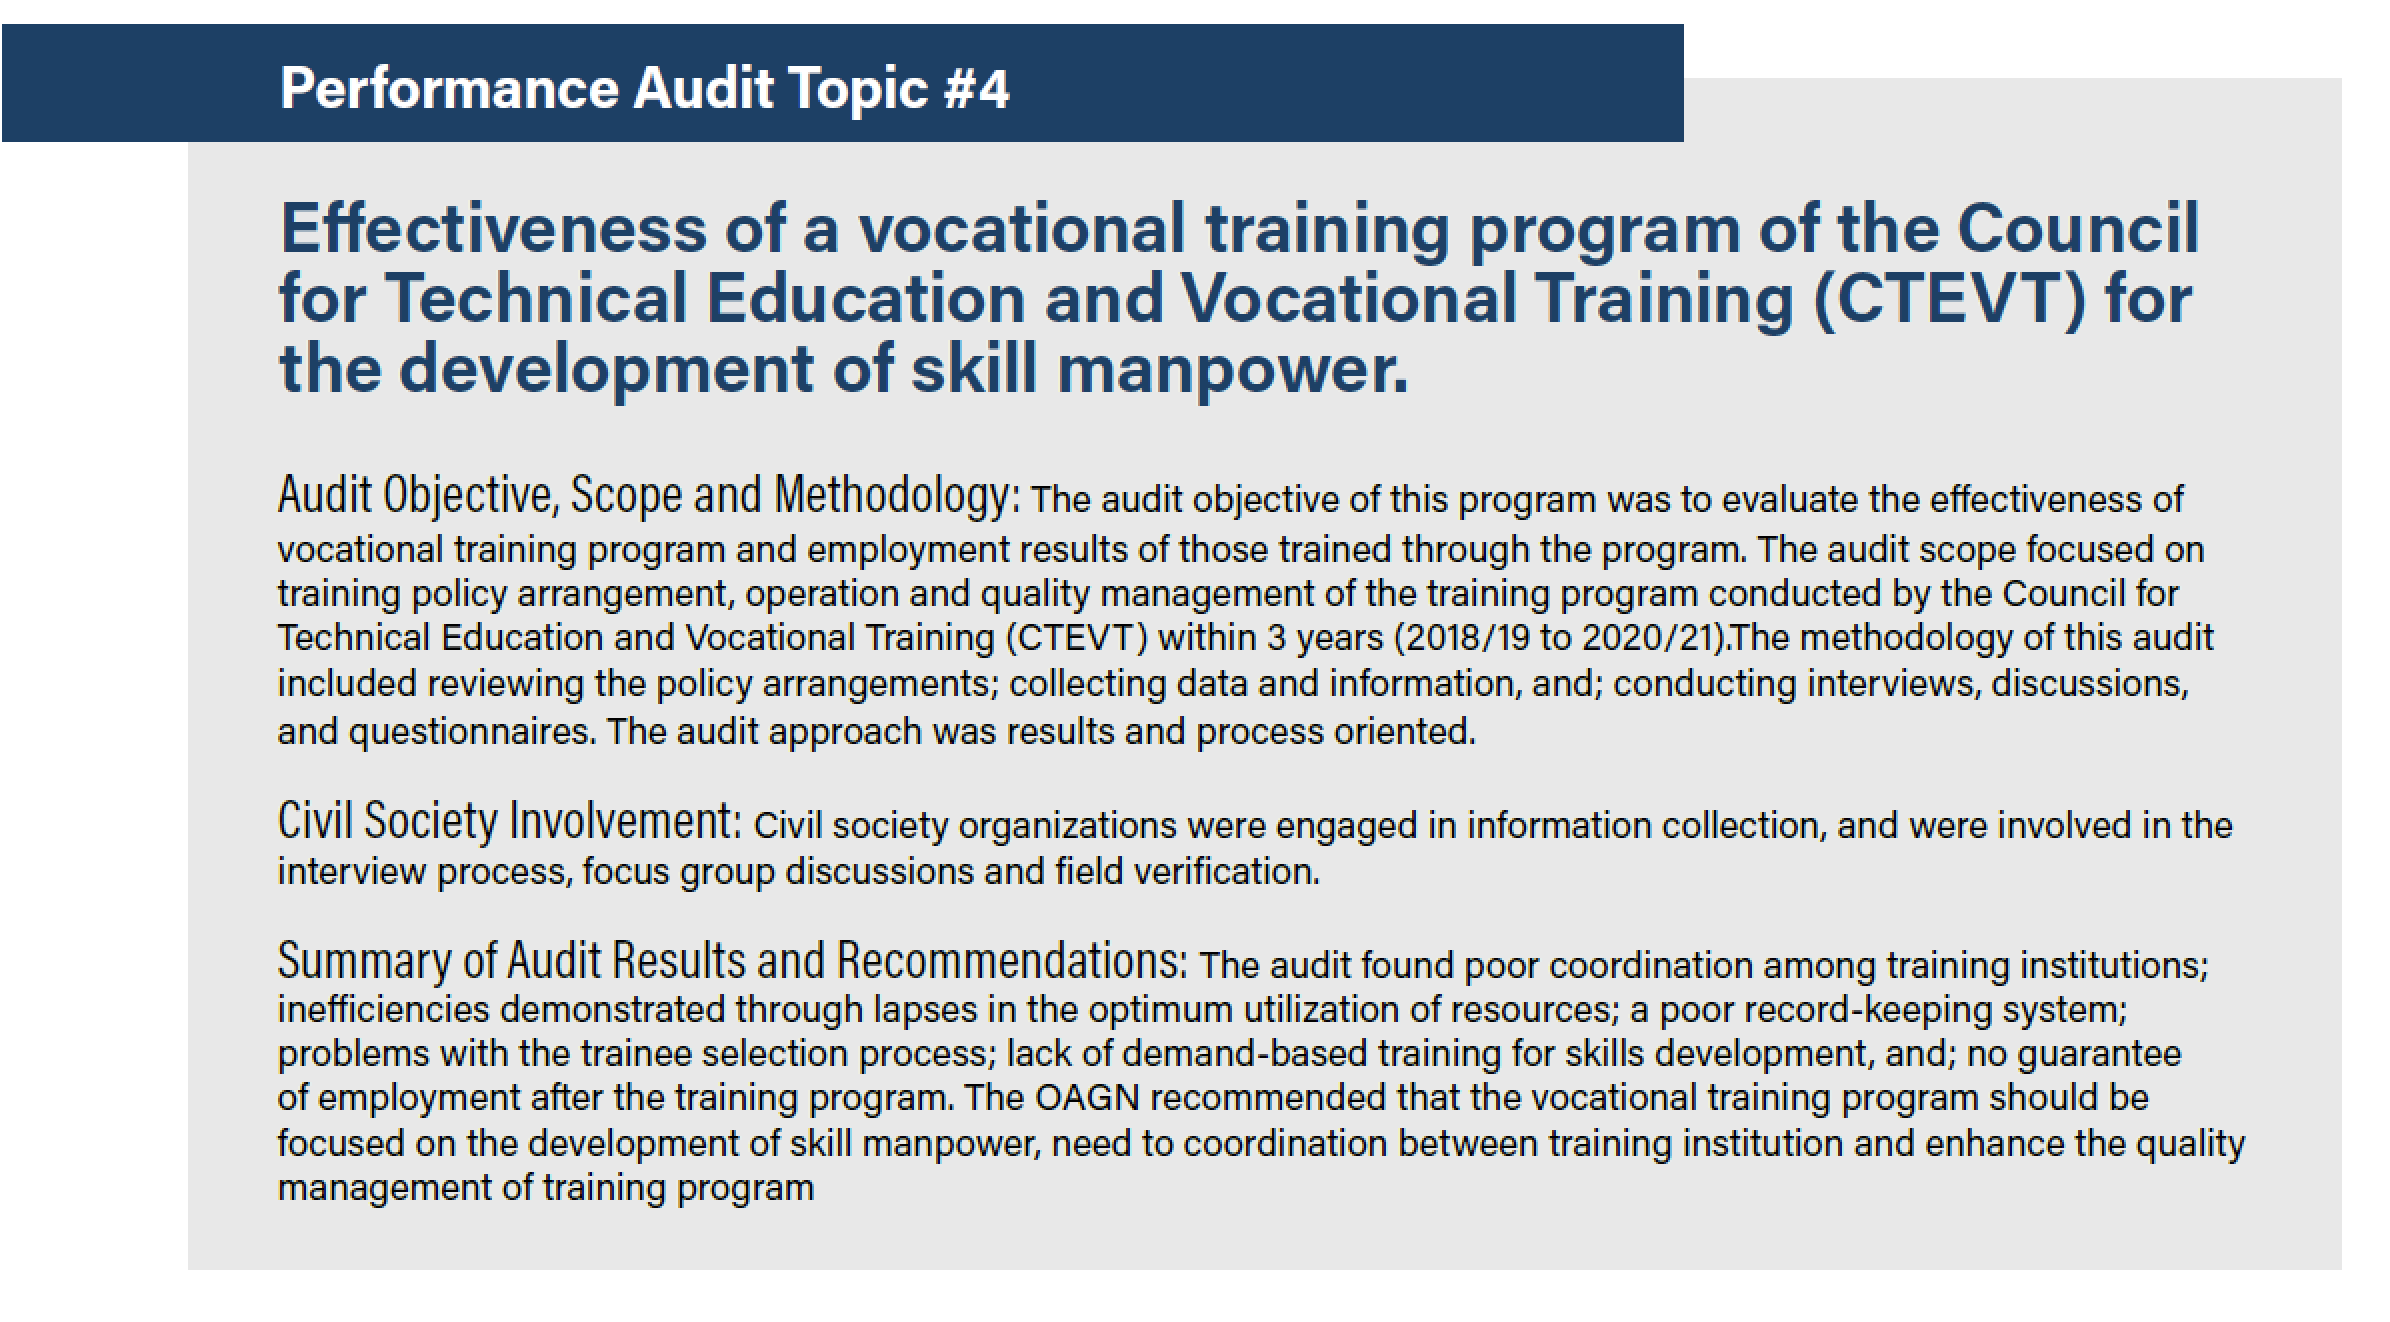 فعالية برنامج التدريب المهني لمجلس التعليم الفني والتدريب المهني (CTEVT) لتنمية مهارات القوى العاملة.